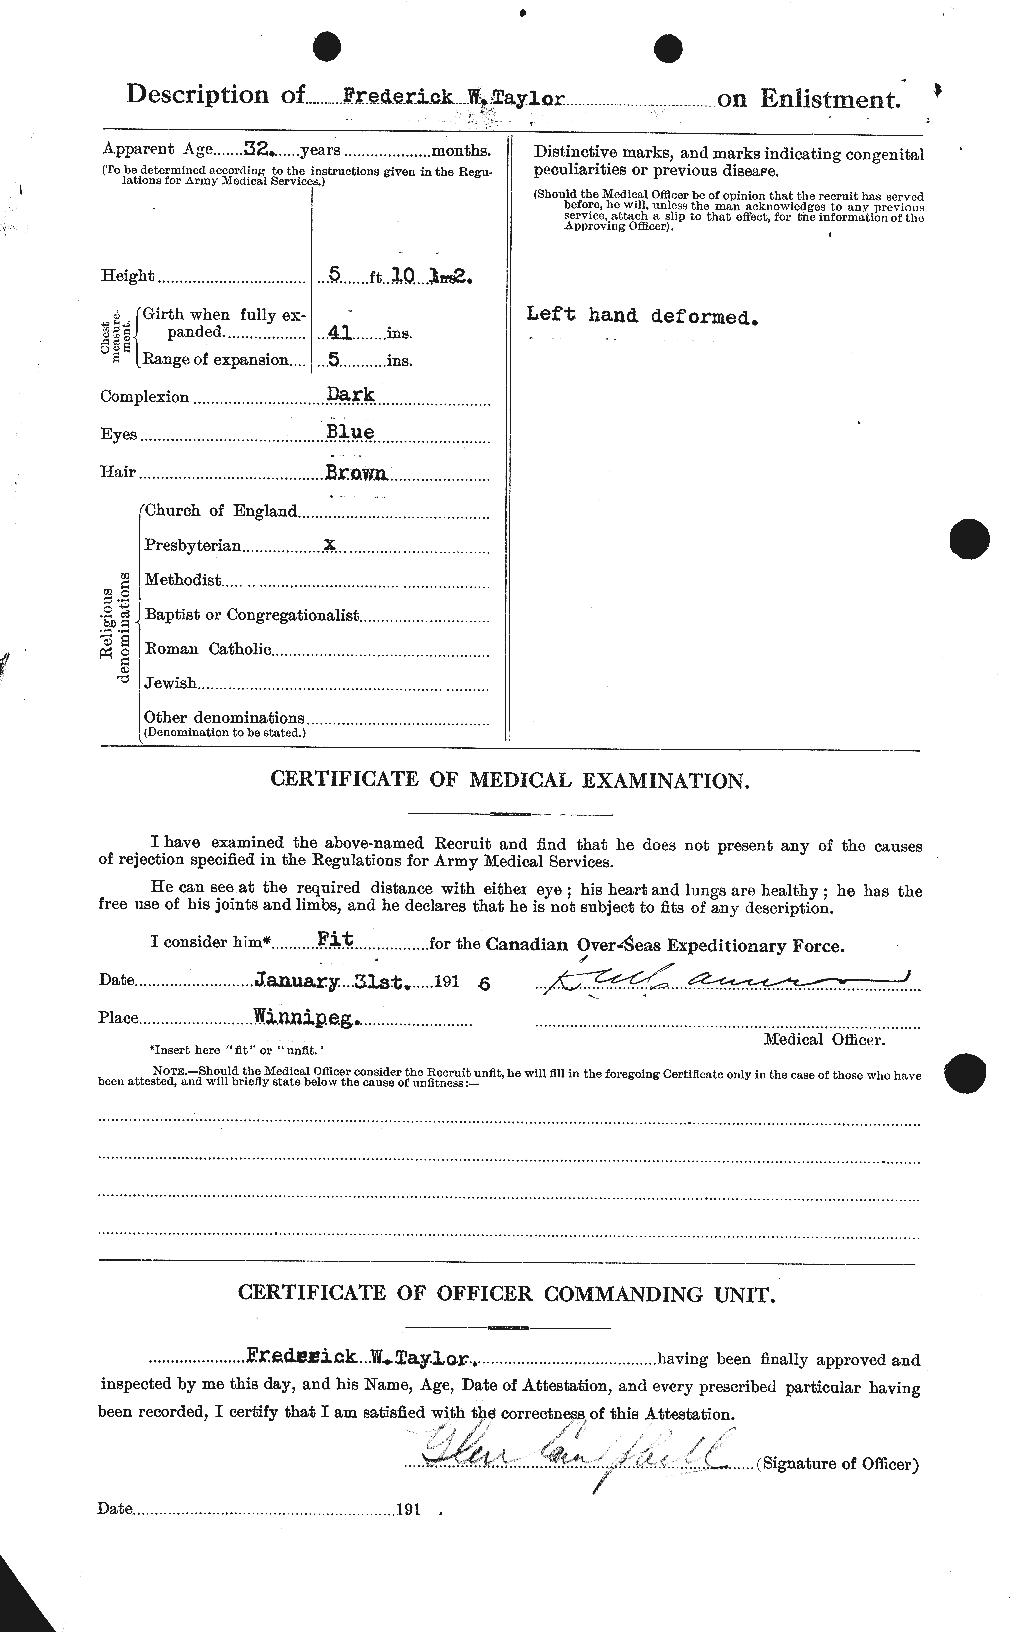 Dossiers du Personnel de la Première Guerre mondiale - CEC 625828b